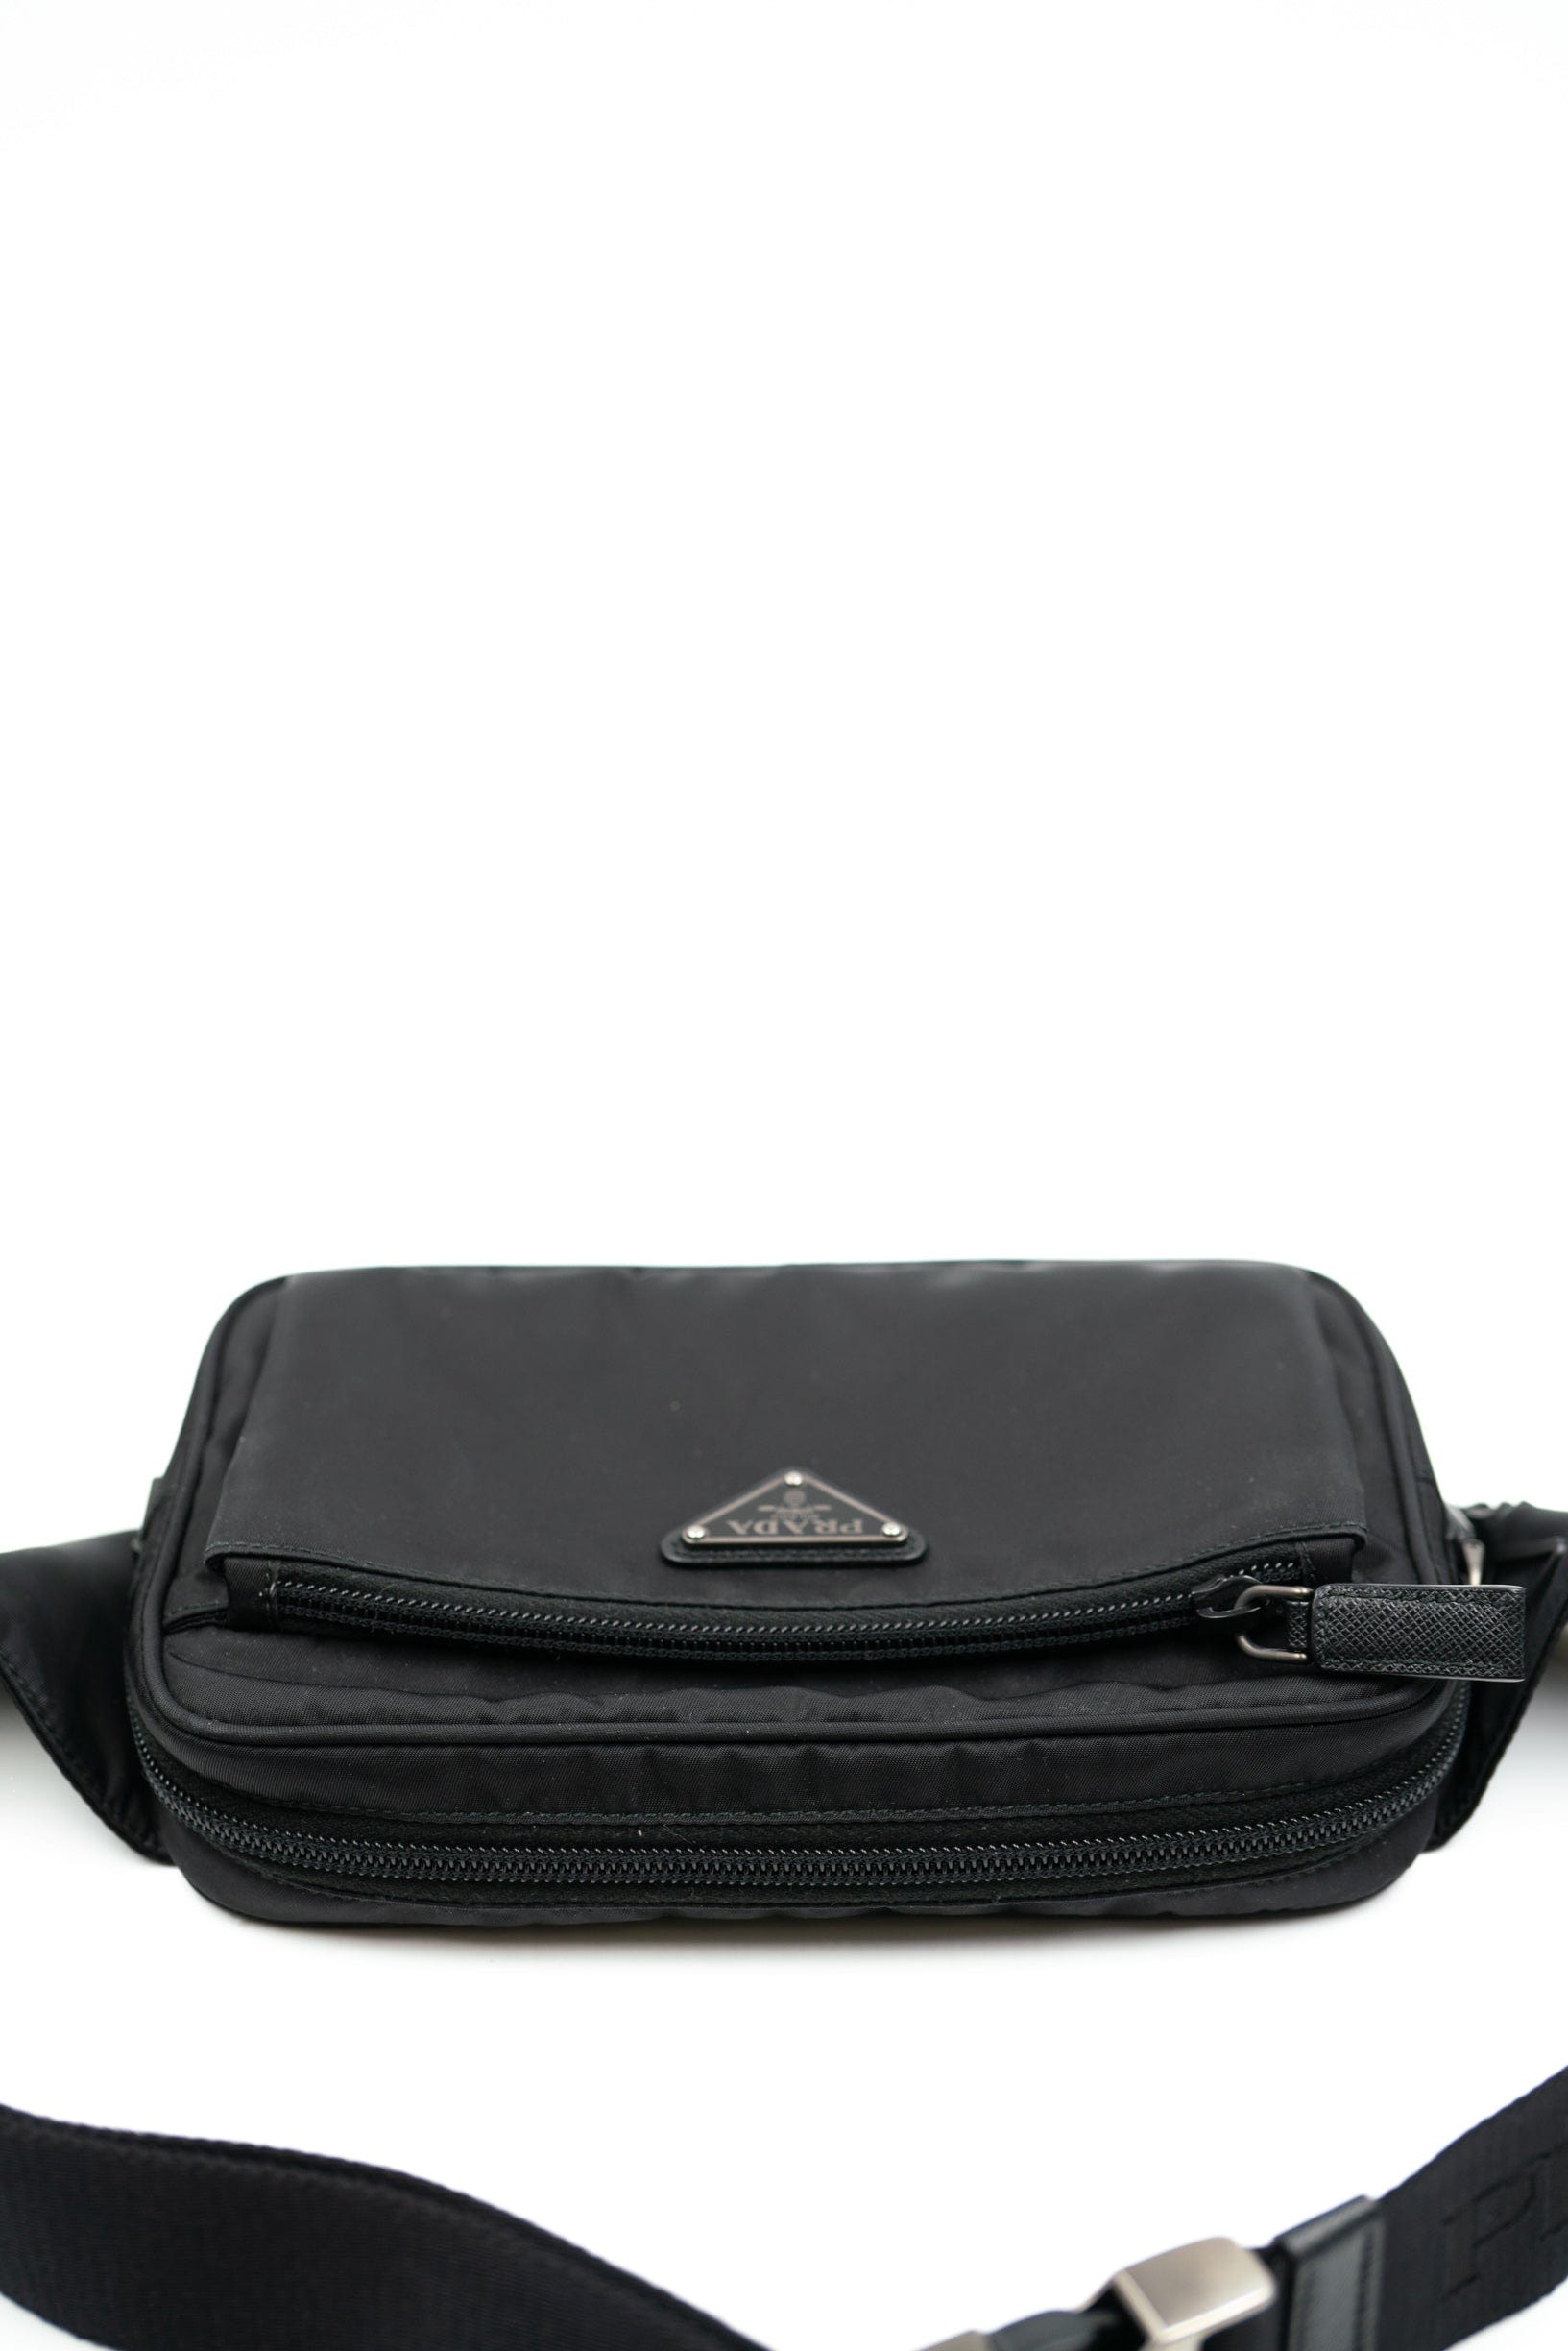 Prada Prada re-nylon black bum bag - AJC0051